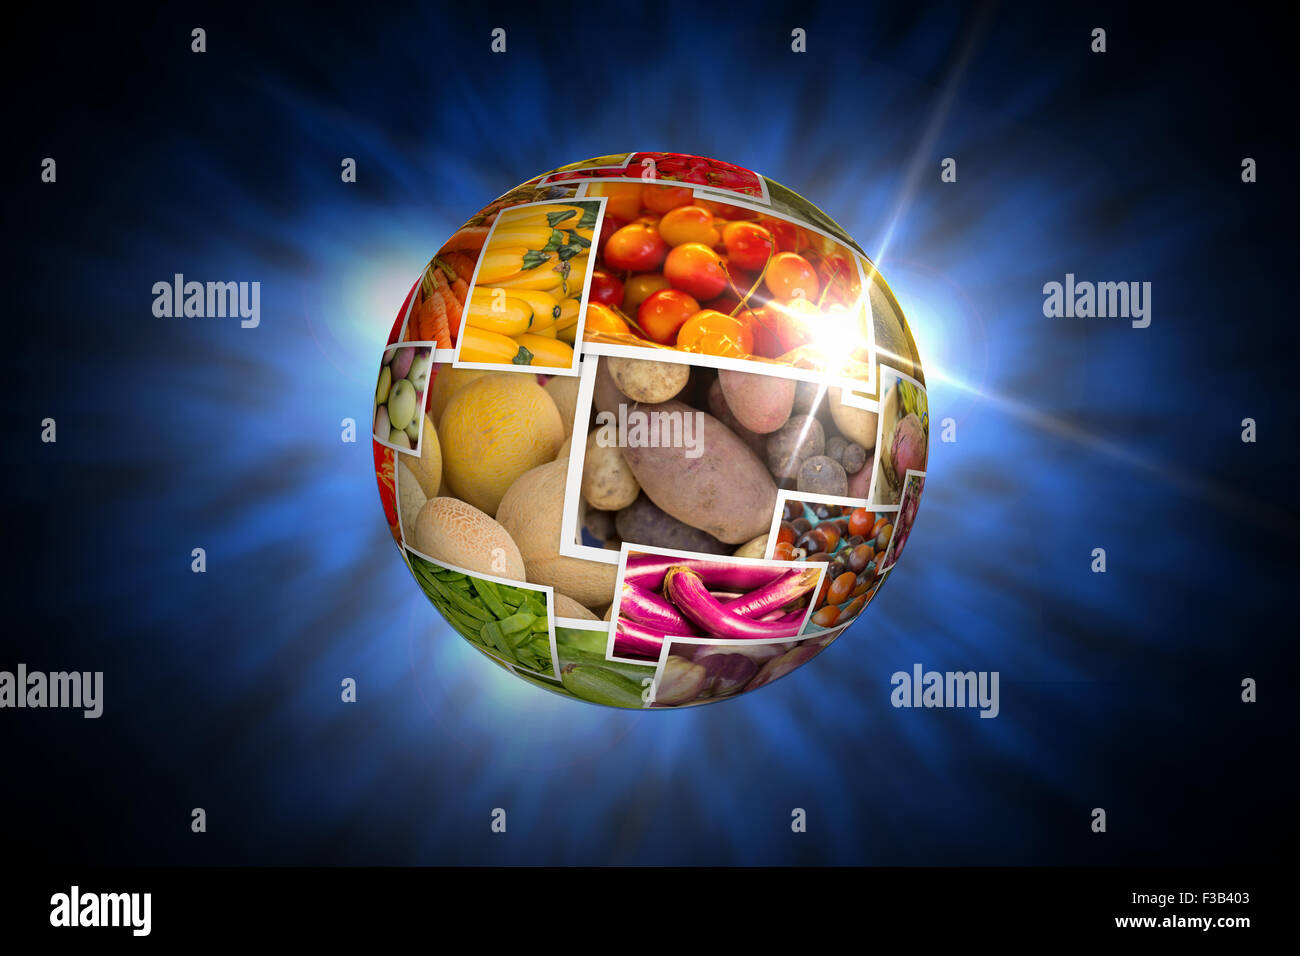 Varietà di agricoltori popolare mercato di frutta e verdura in produrre collage globe Foto Stock